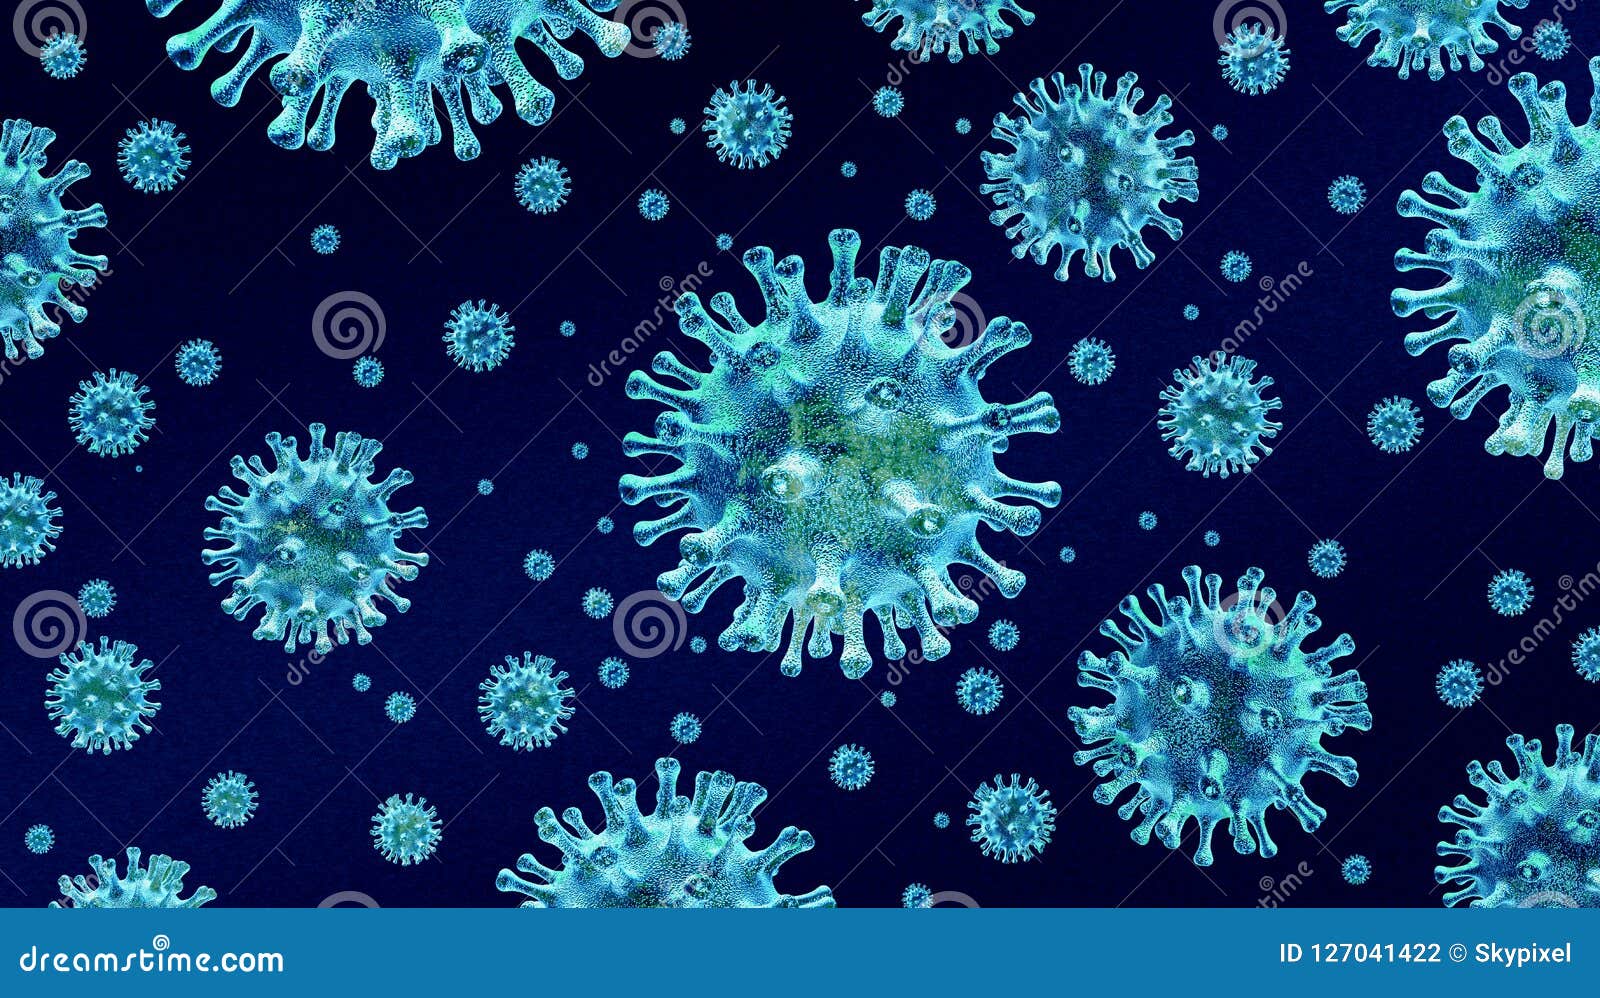 influenza background health 